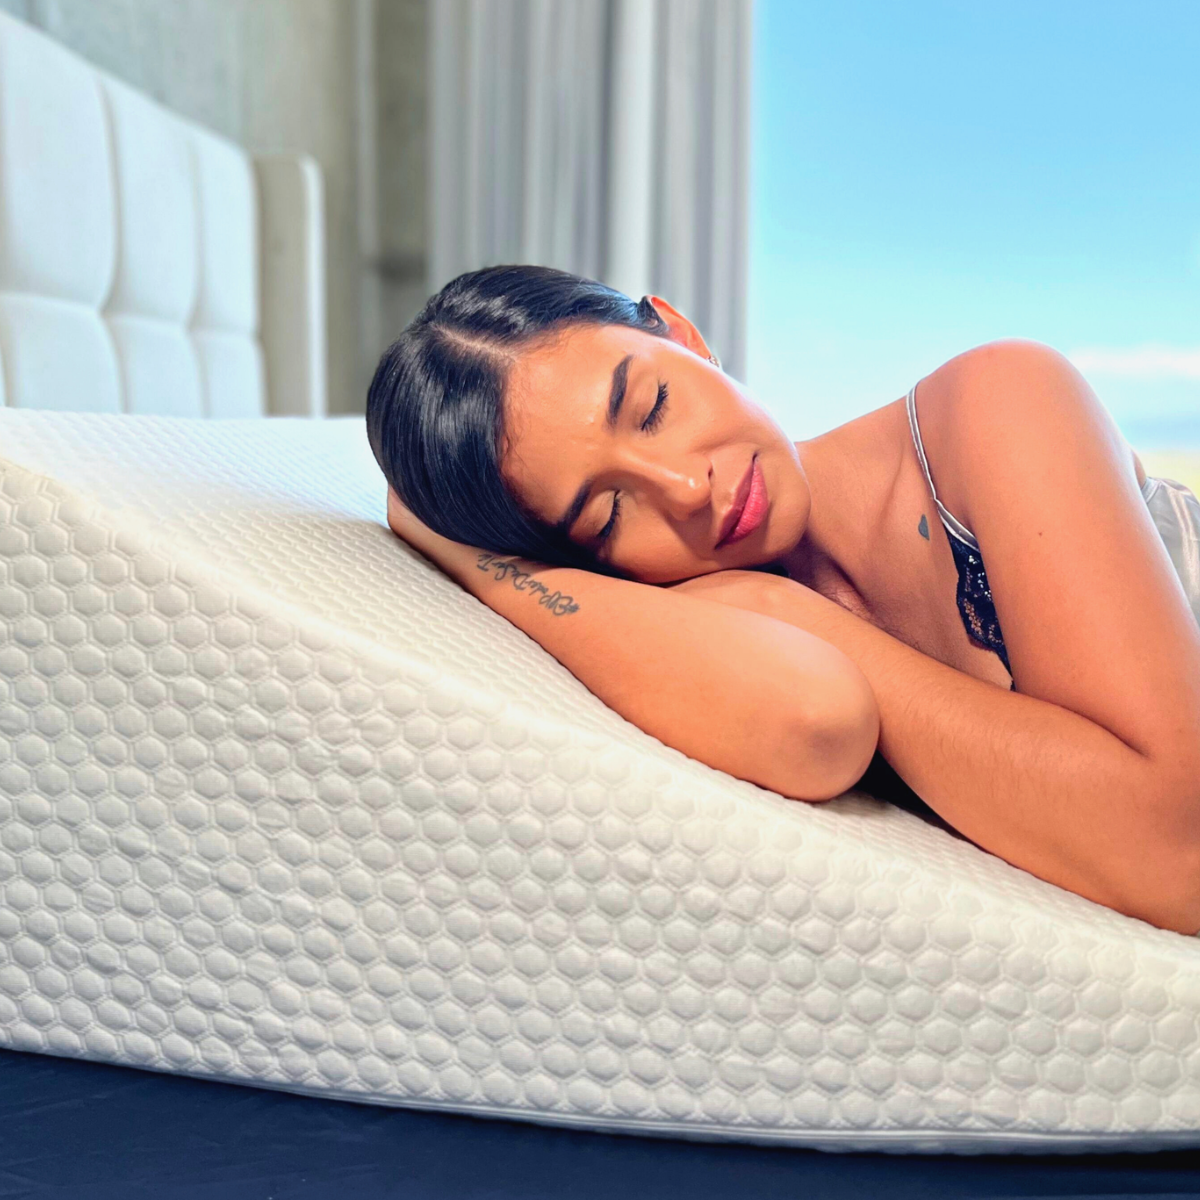 Las ventajas de utilizar una almohada en la cuna - Maxcolchon